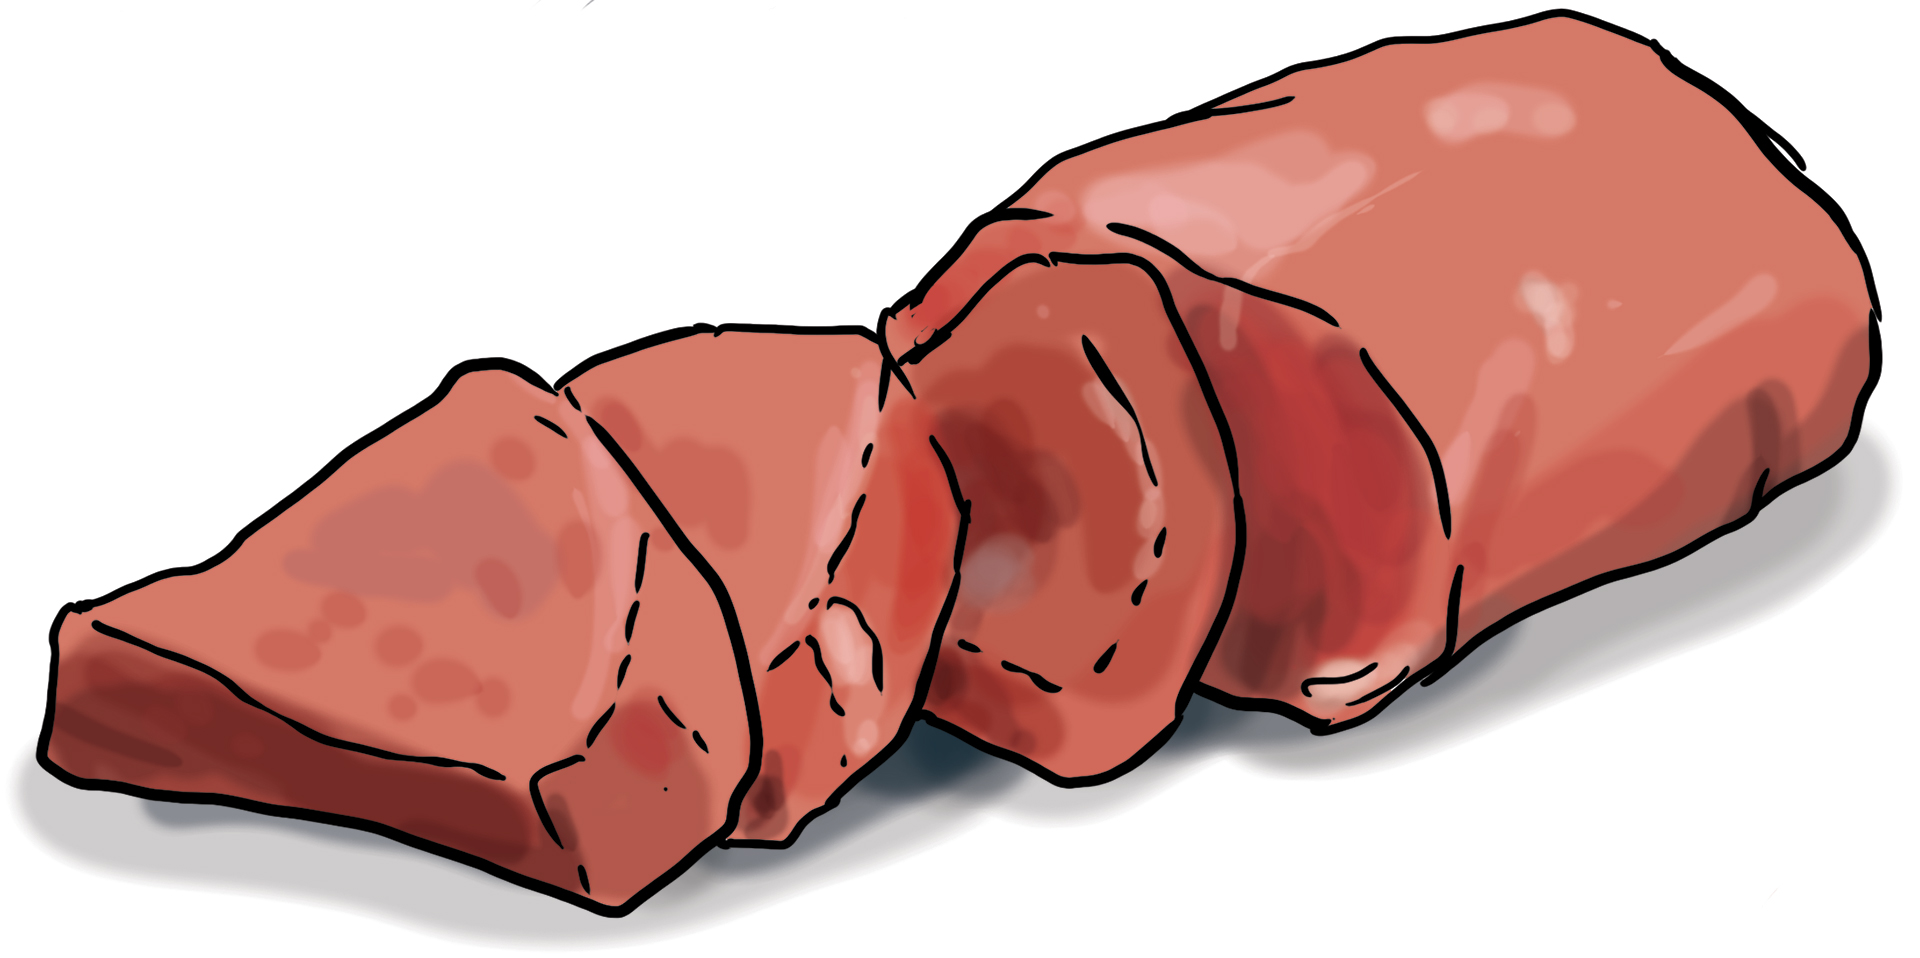 Ein Stück Fleisch